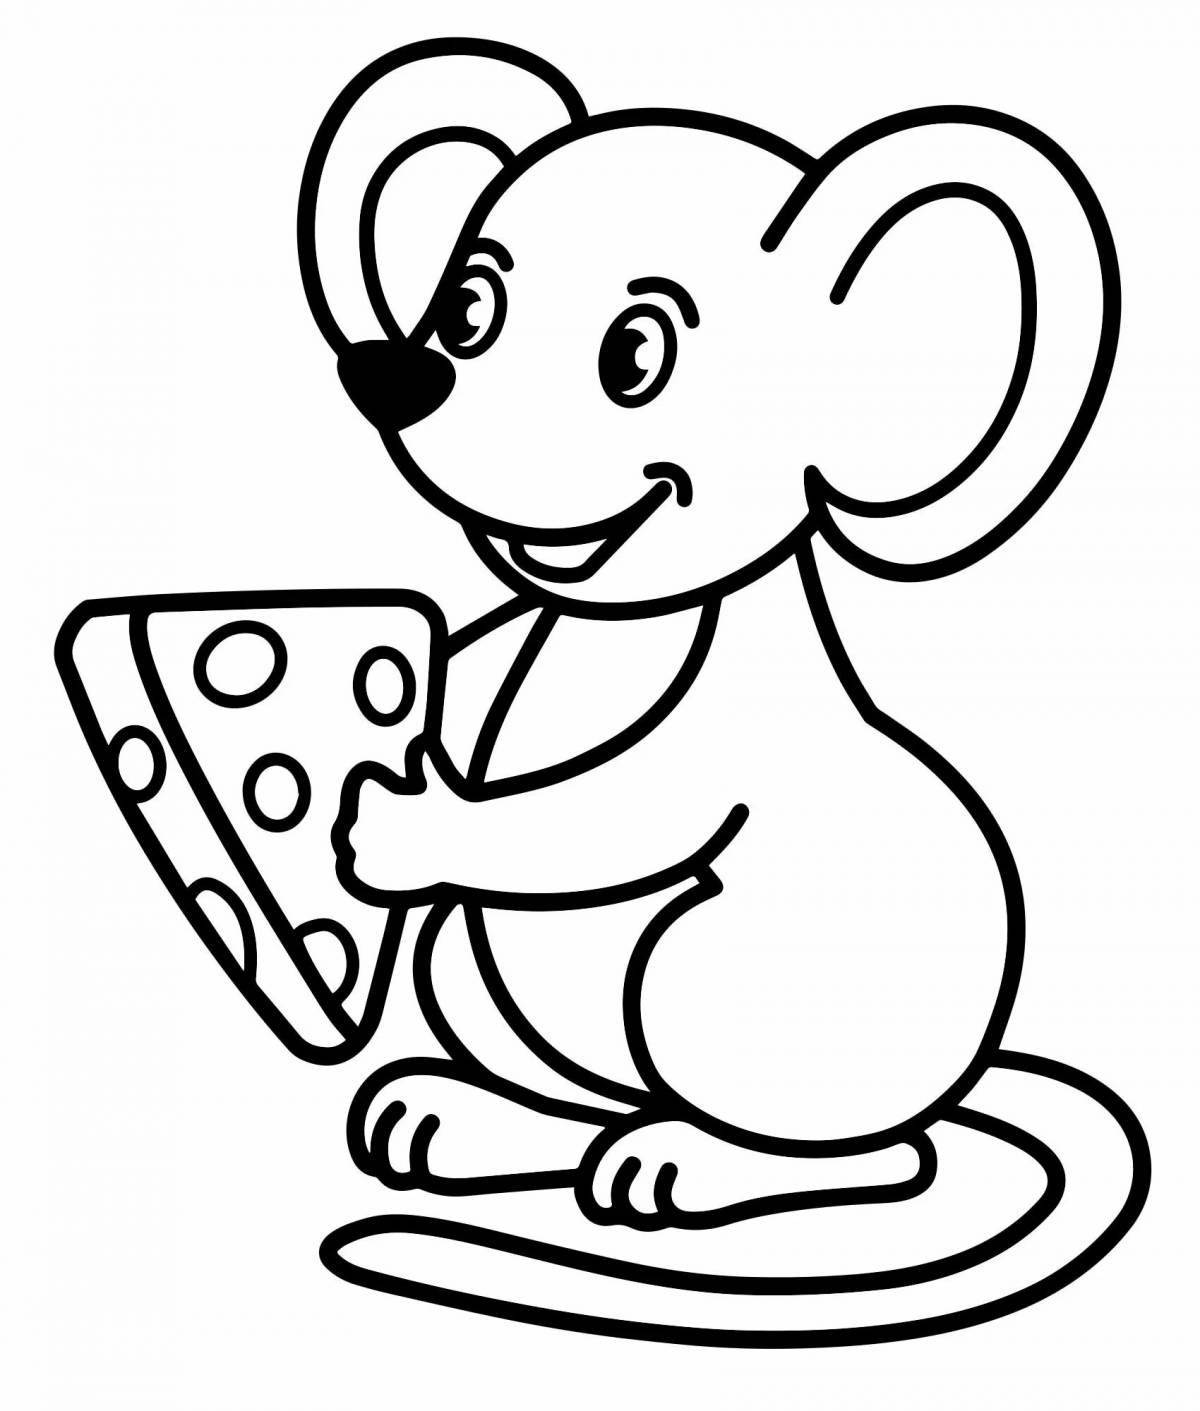 Юношеская раскраска мышь для детей 3-4 лет